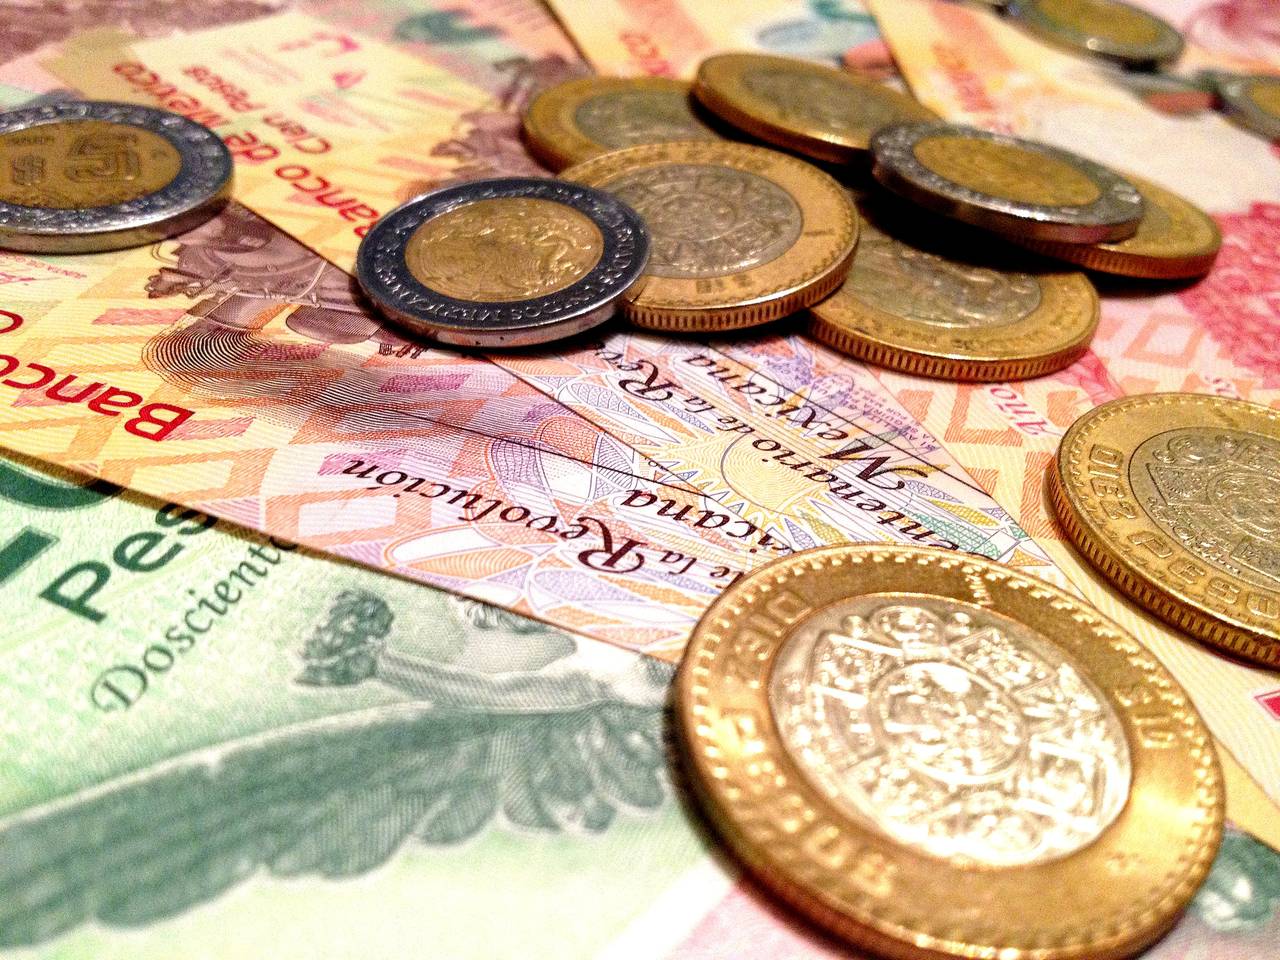 Tendencia. Tras casi alcanzar los 21 pesos frente al dólar, el tipo de cambio mostró estabilidad y apreciación. (ARCHIVO)